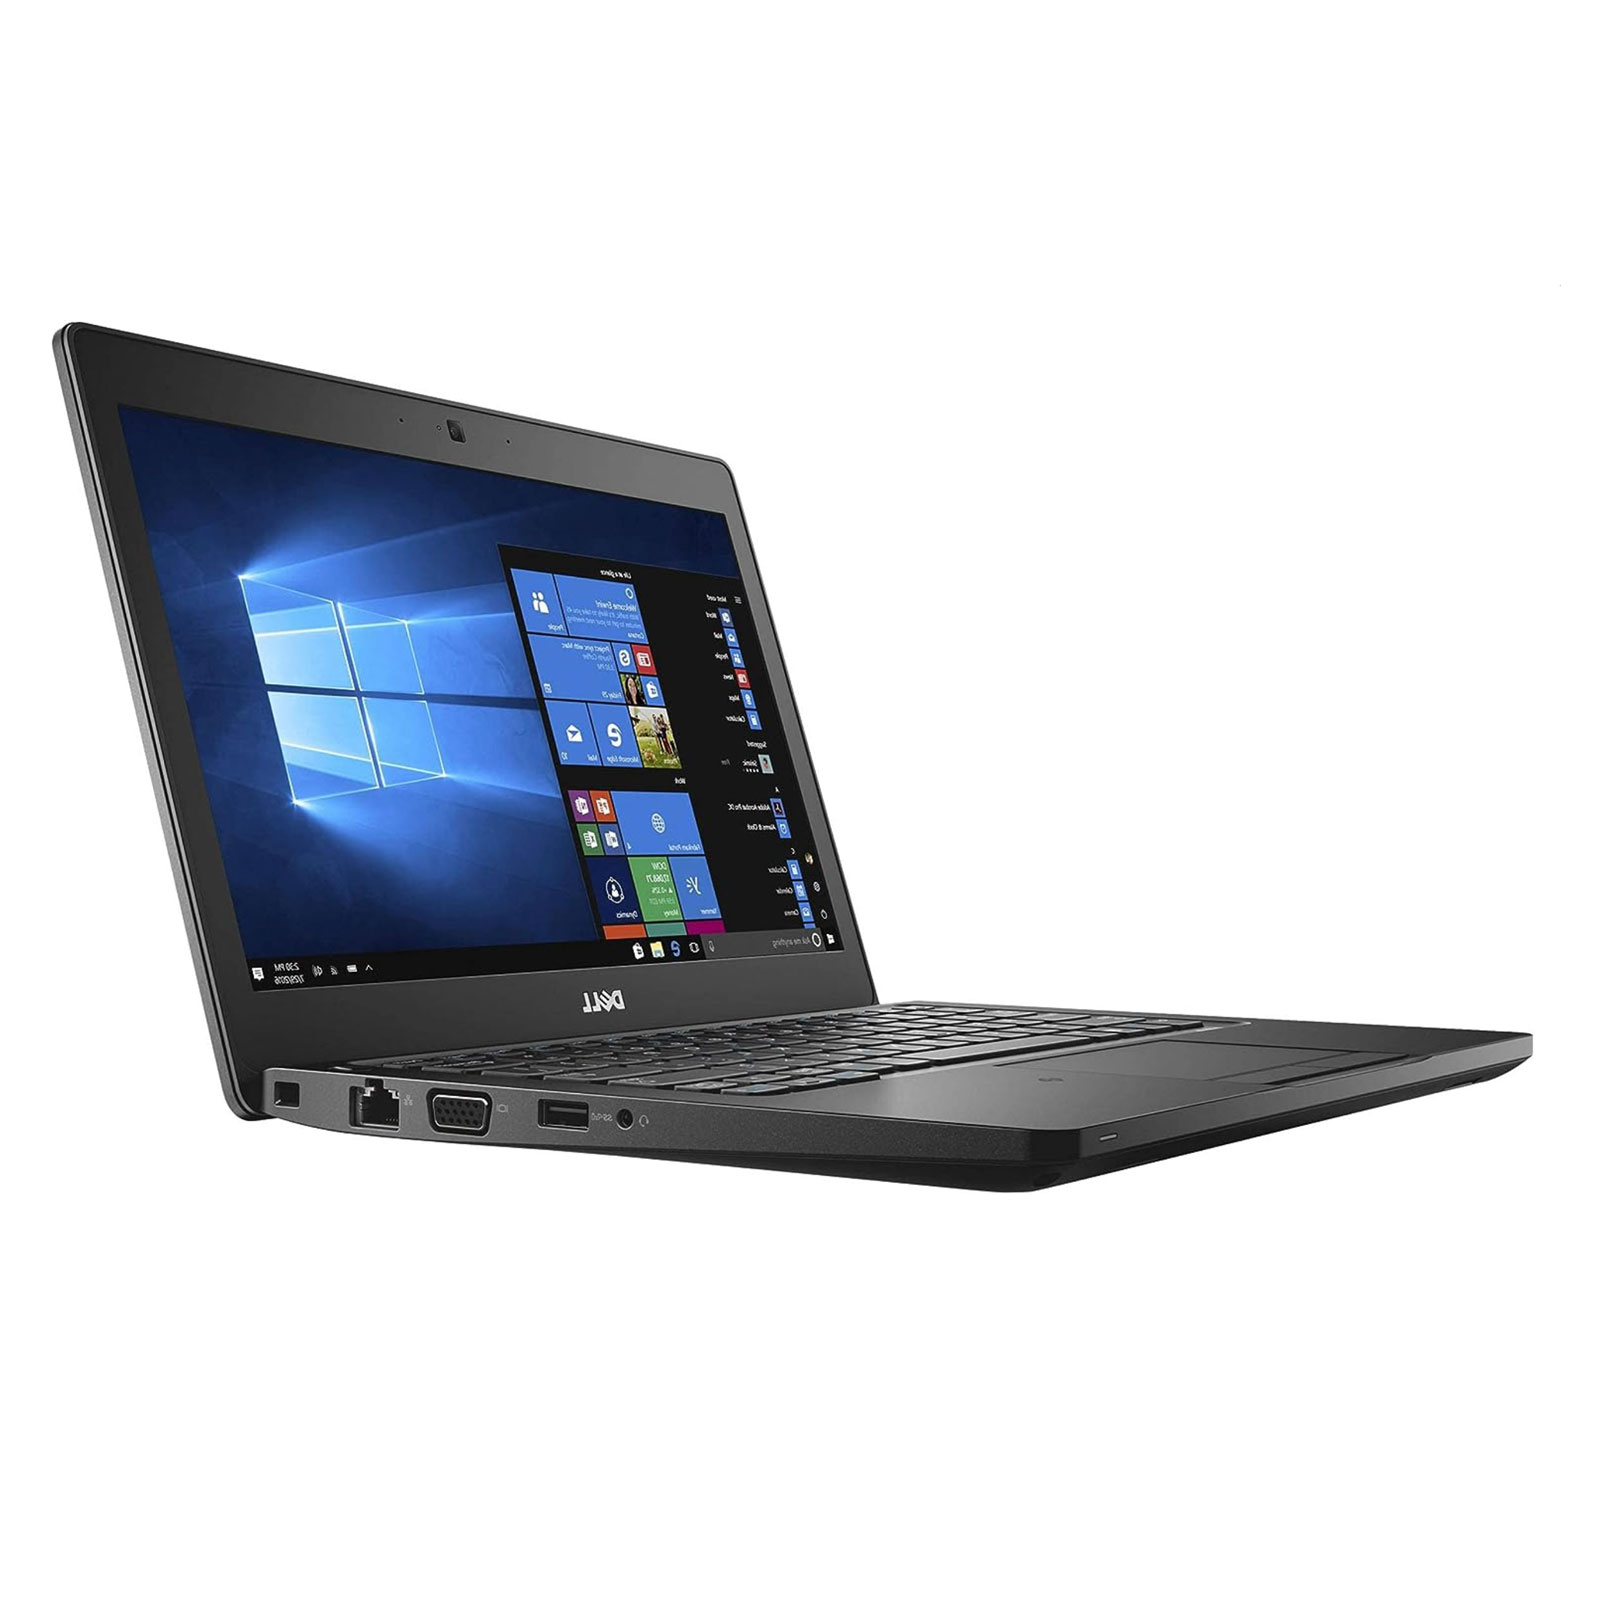 Dell Laptop 8 Gb Ram 256 Gb Ssd I5 Dual Core, 2.6 G Hz Latitude 5280 12.5 Inches Intel Core I5 7300 U Hdmi Webcam Win 10 Pro Black